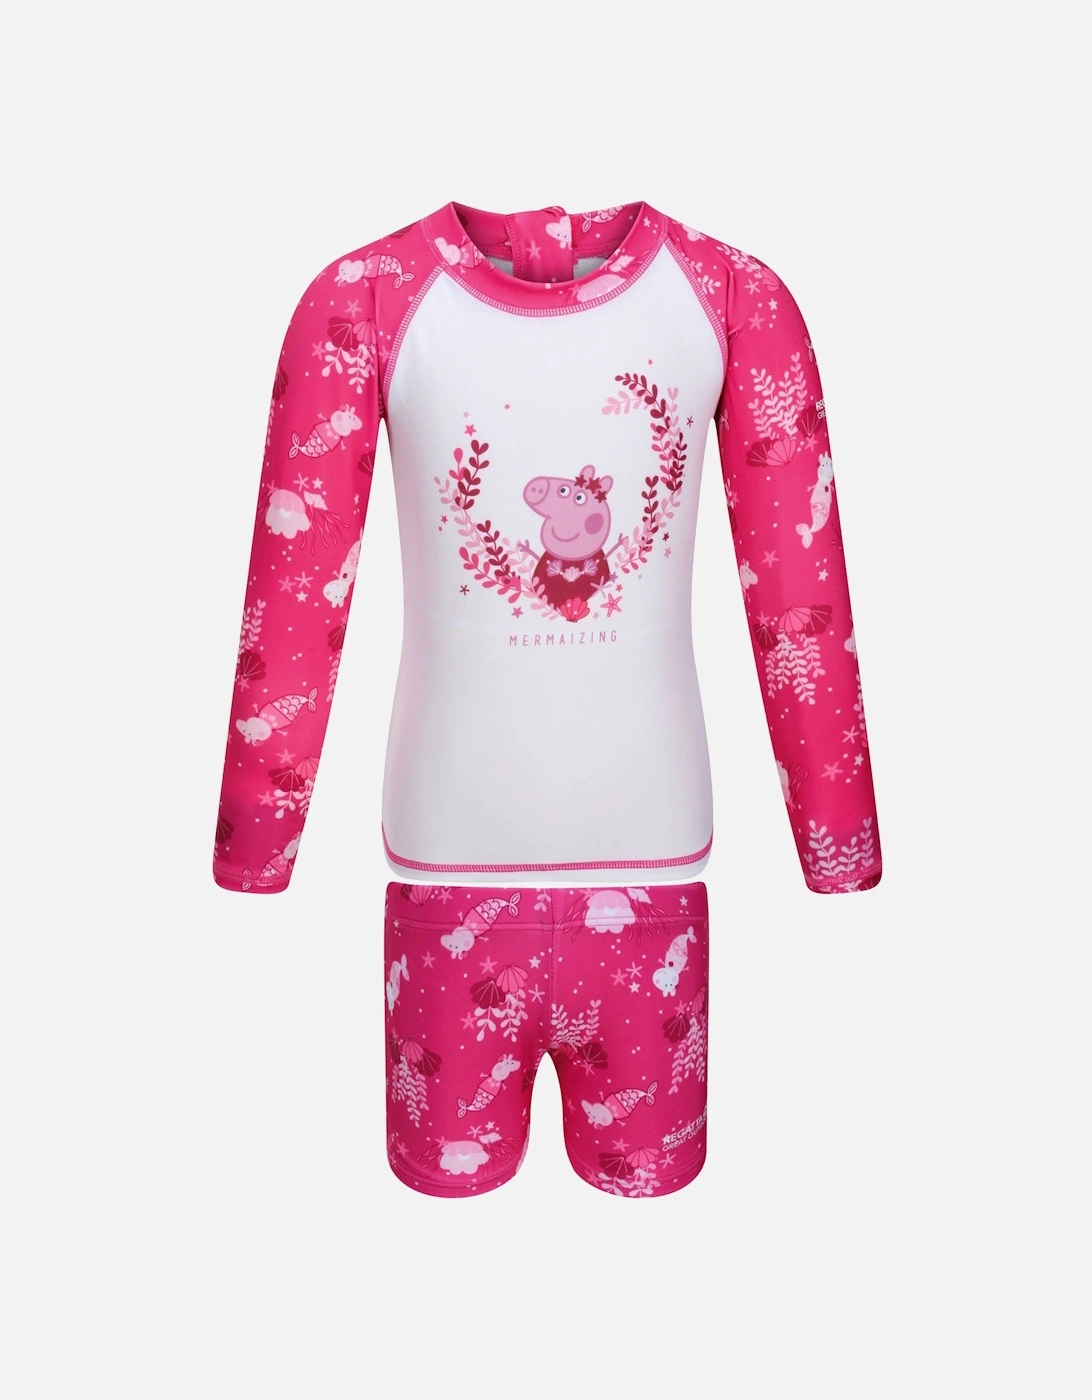 Kids Peppa Pig Long Sleeve Rash Suit Set